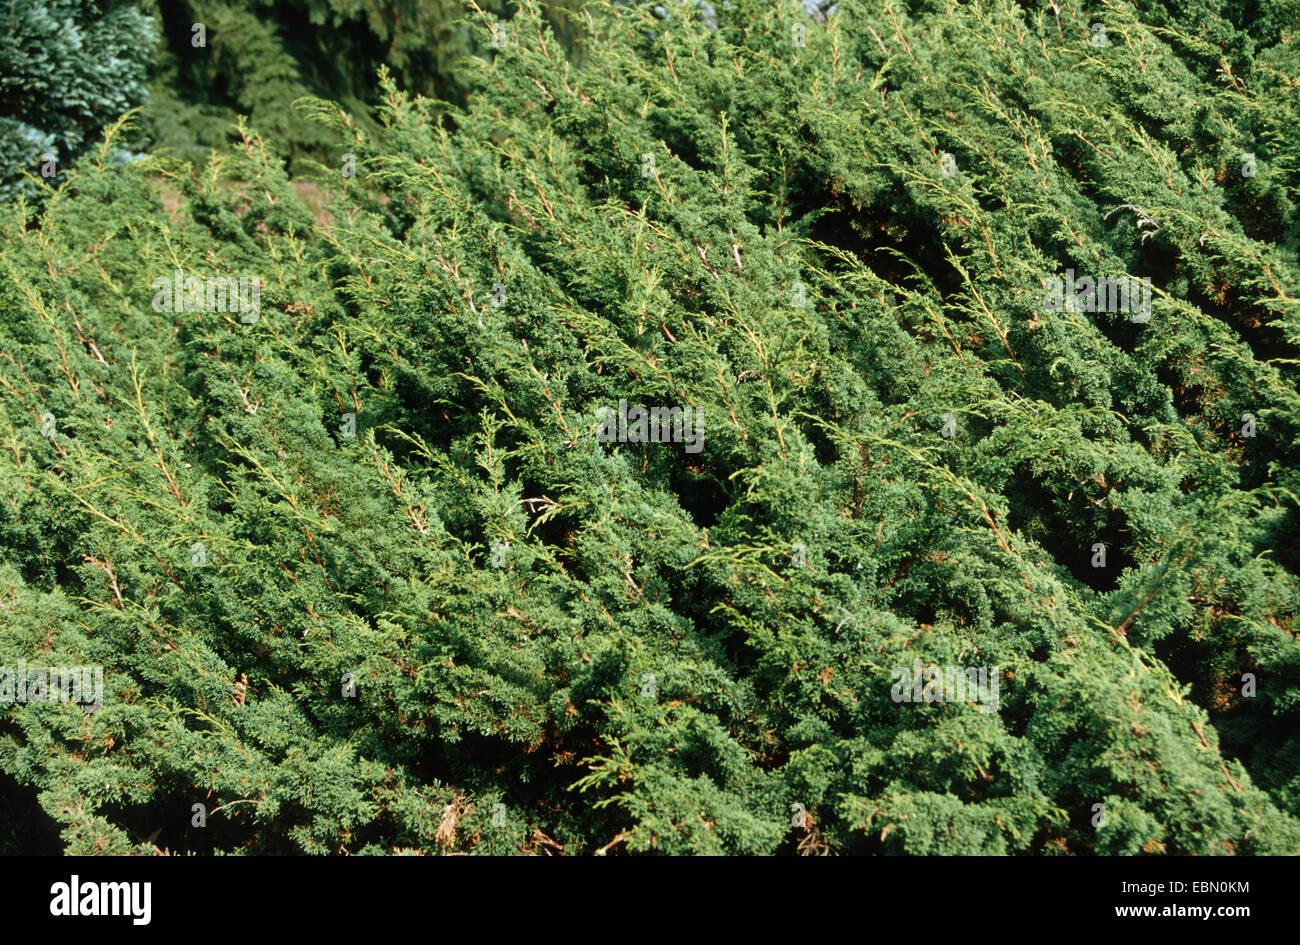 Chinese juniper (Juniperus chinensis 'Pfitzeriana', Juniperus chinensis Pfitzeriana), cultivar Globosa, branch Stock Photo